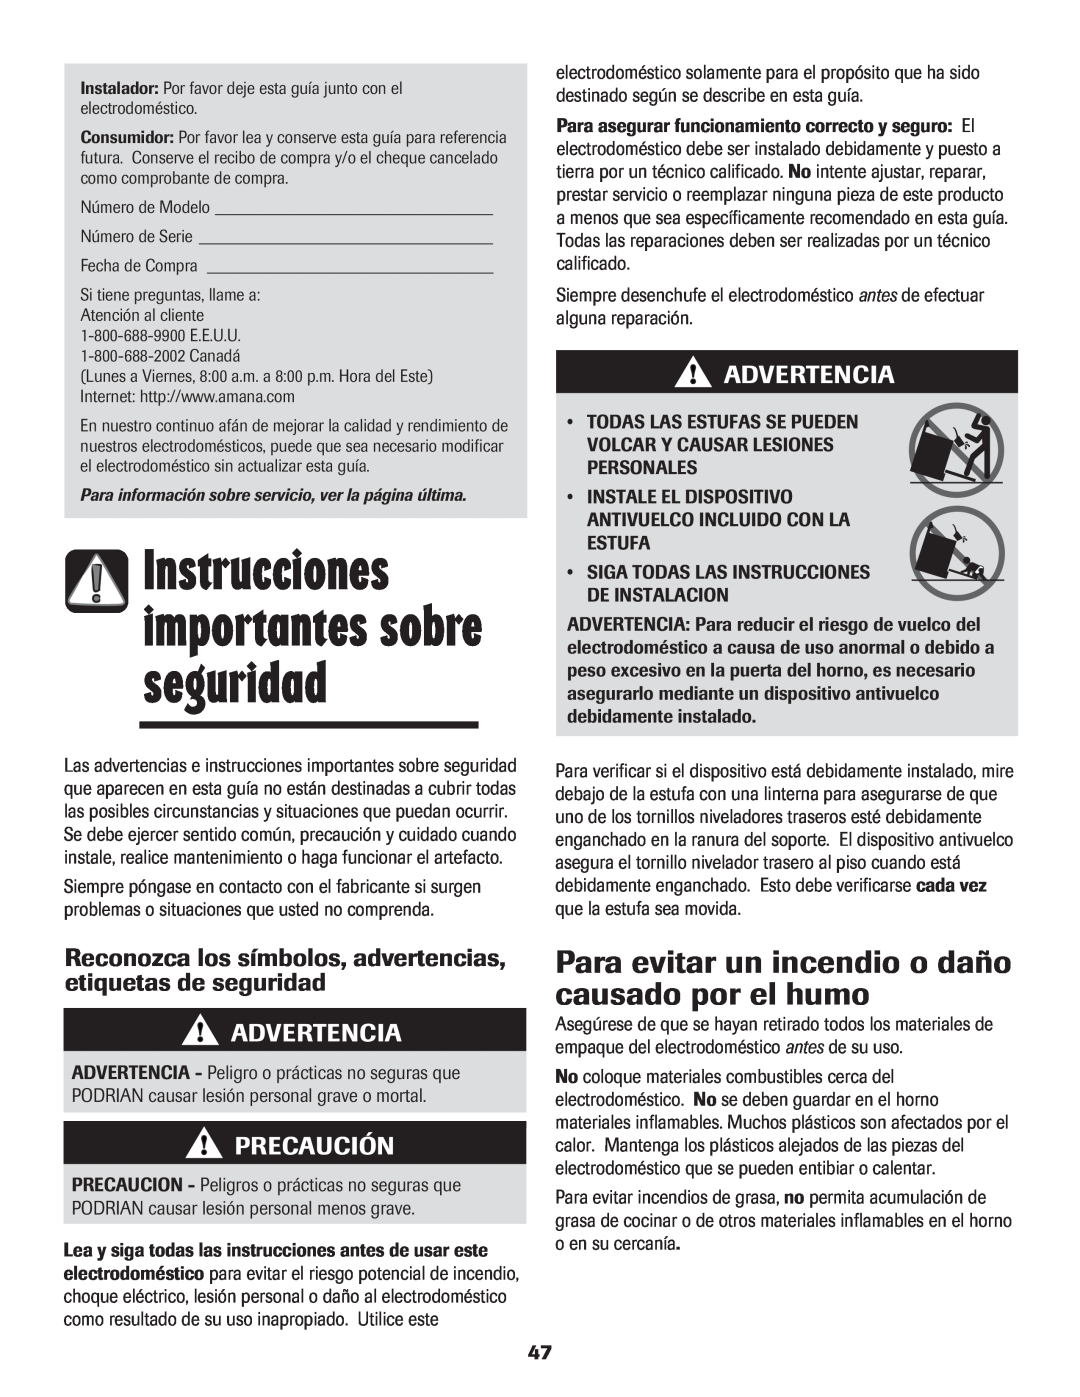 Amana Electric Smoothtop Range Instrucciones importantes sobre seguridad, Advertencia, Precaución 